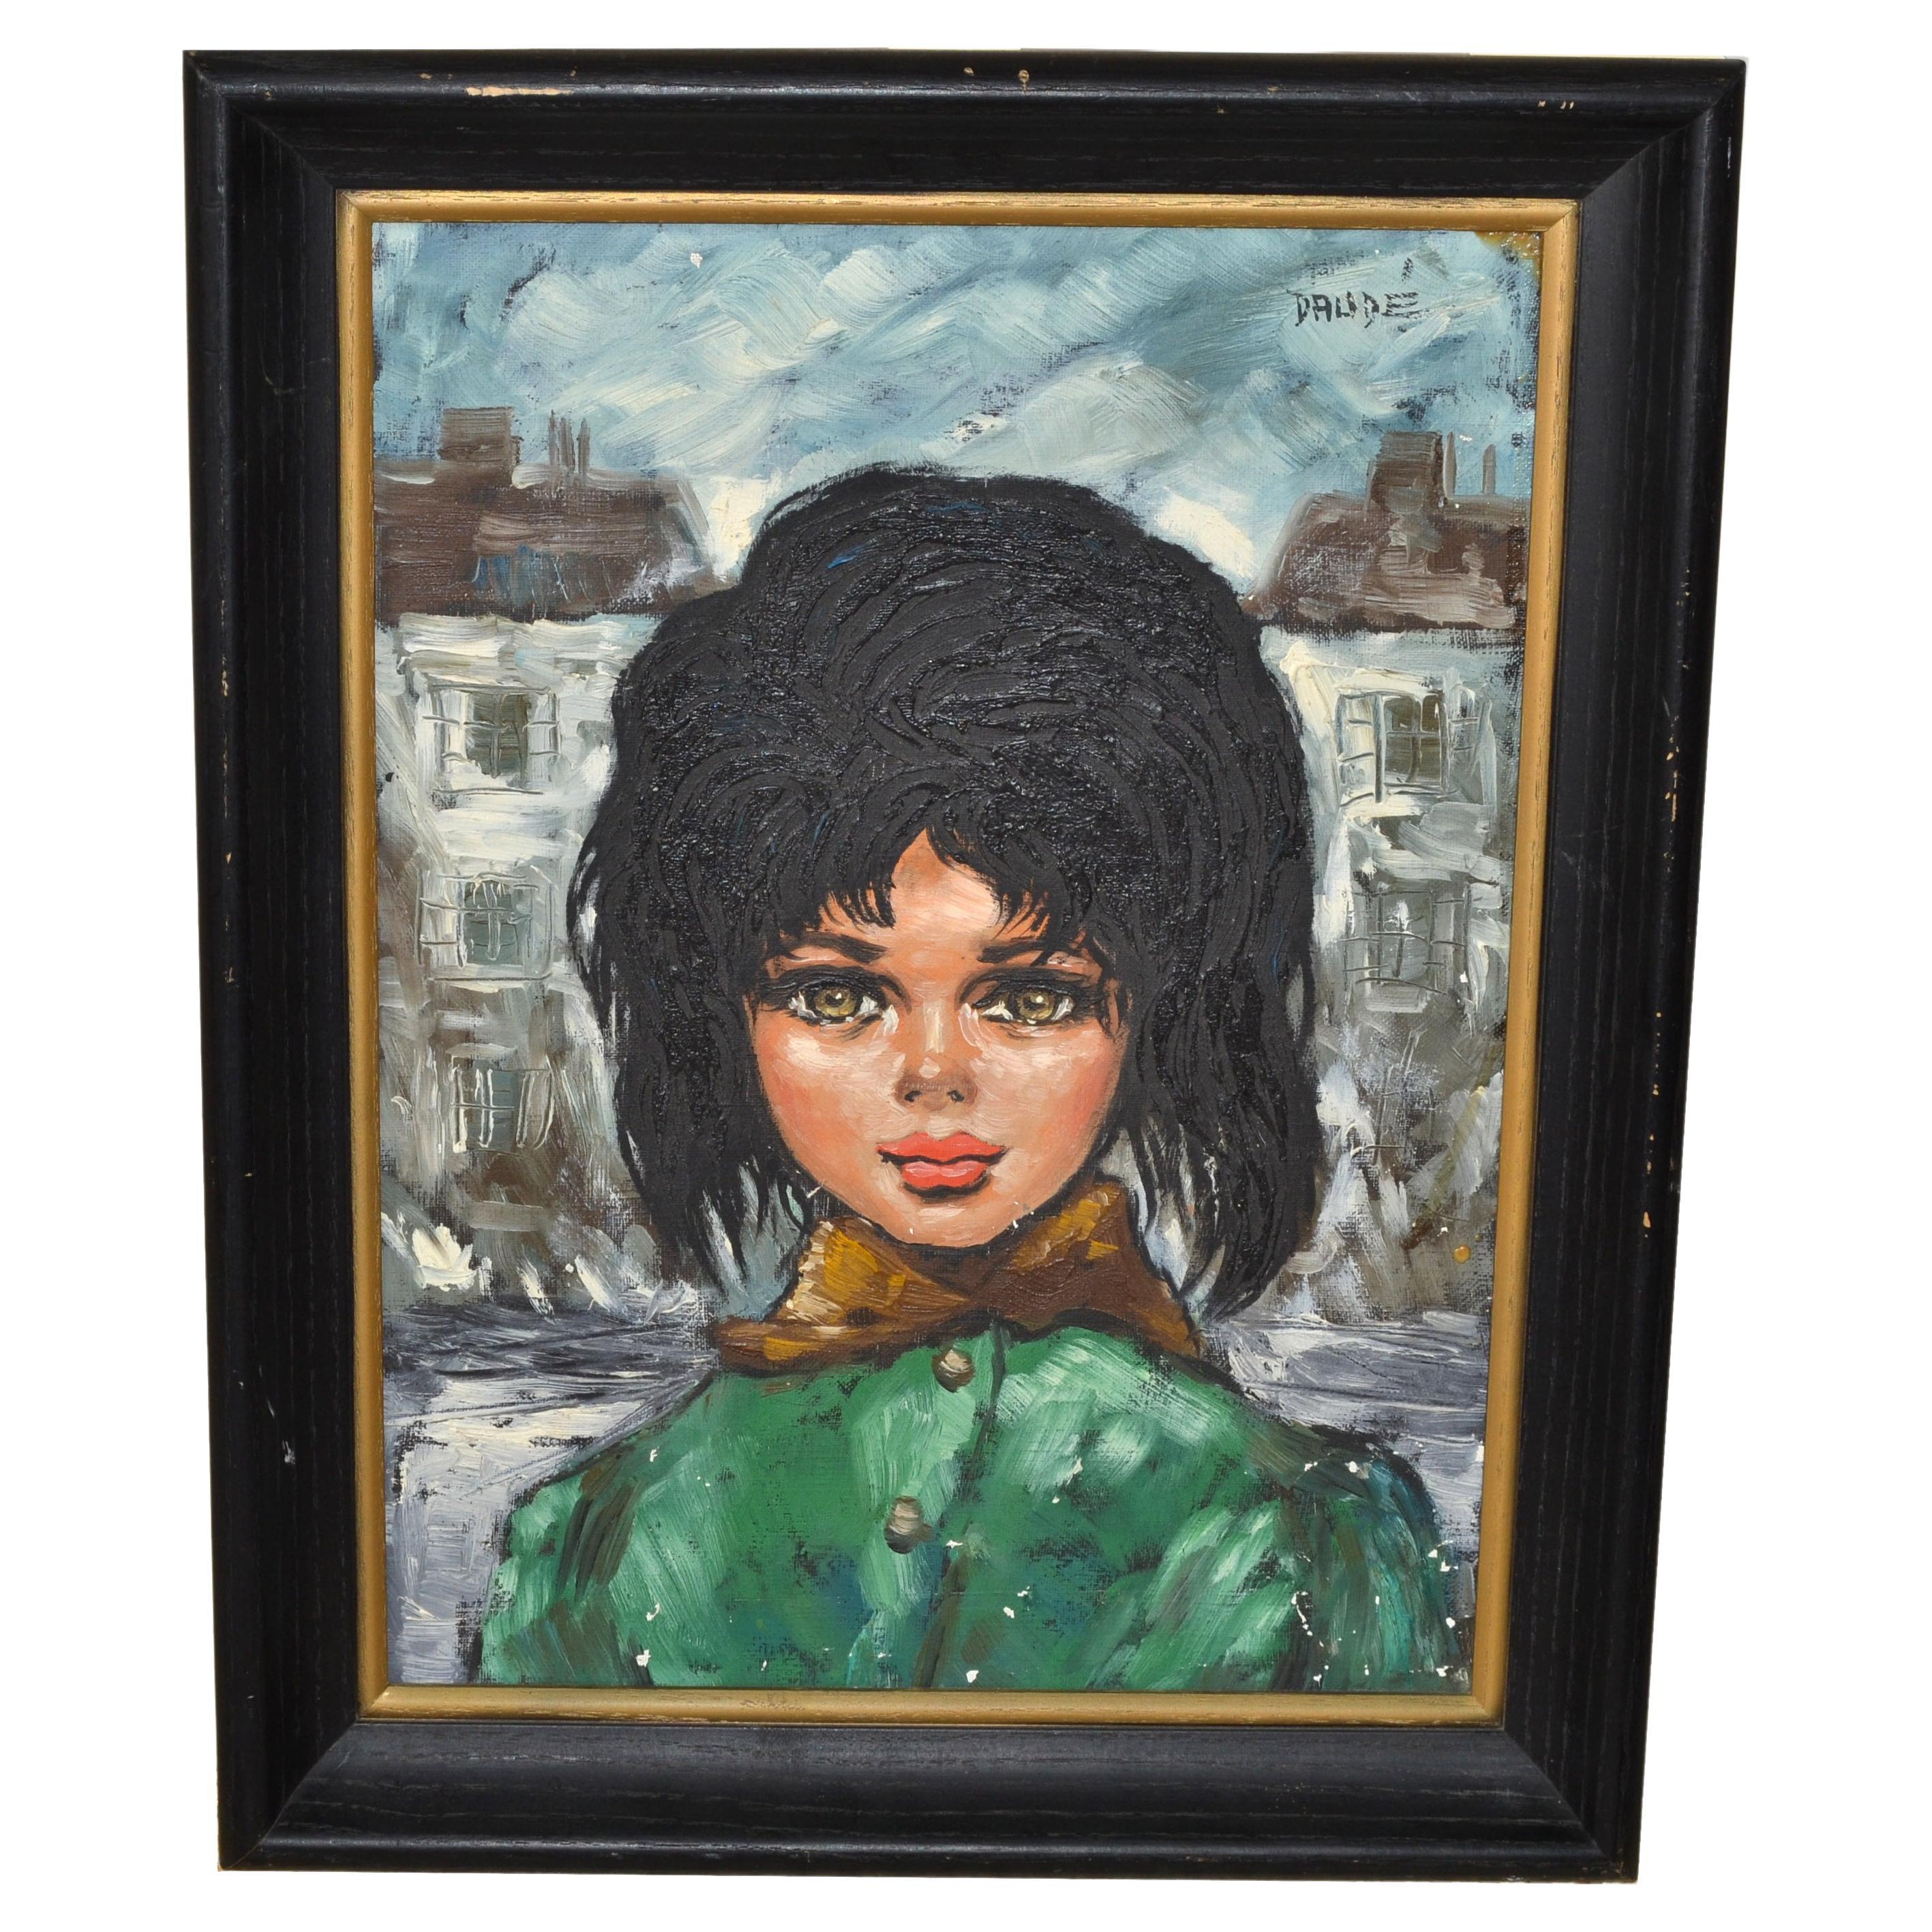 1960 Andre Daude Großes Auge Französisches Mädchen Gemälde Öl Leinwand Schwarzer Rahmen Grüner Mantel